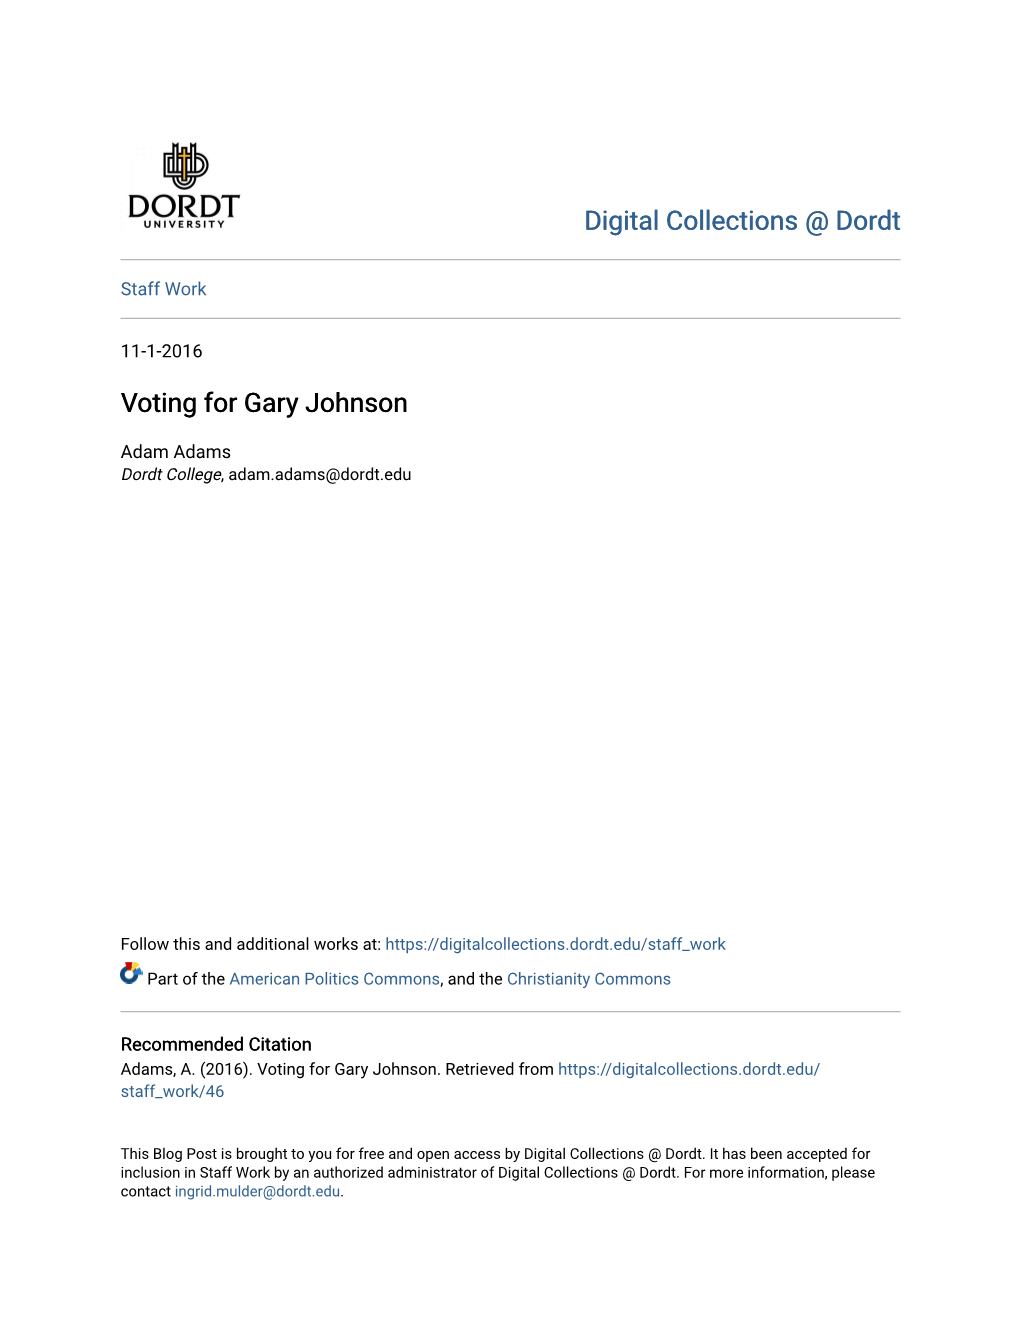 Voting for Gary Johnson